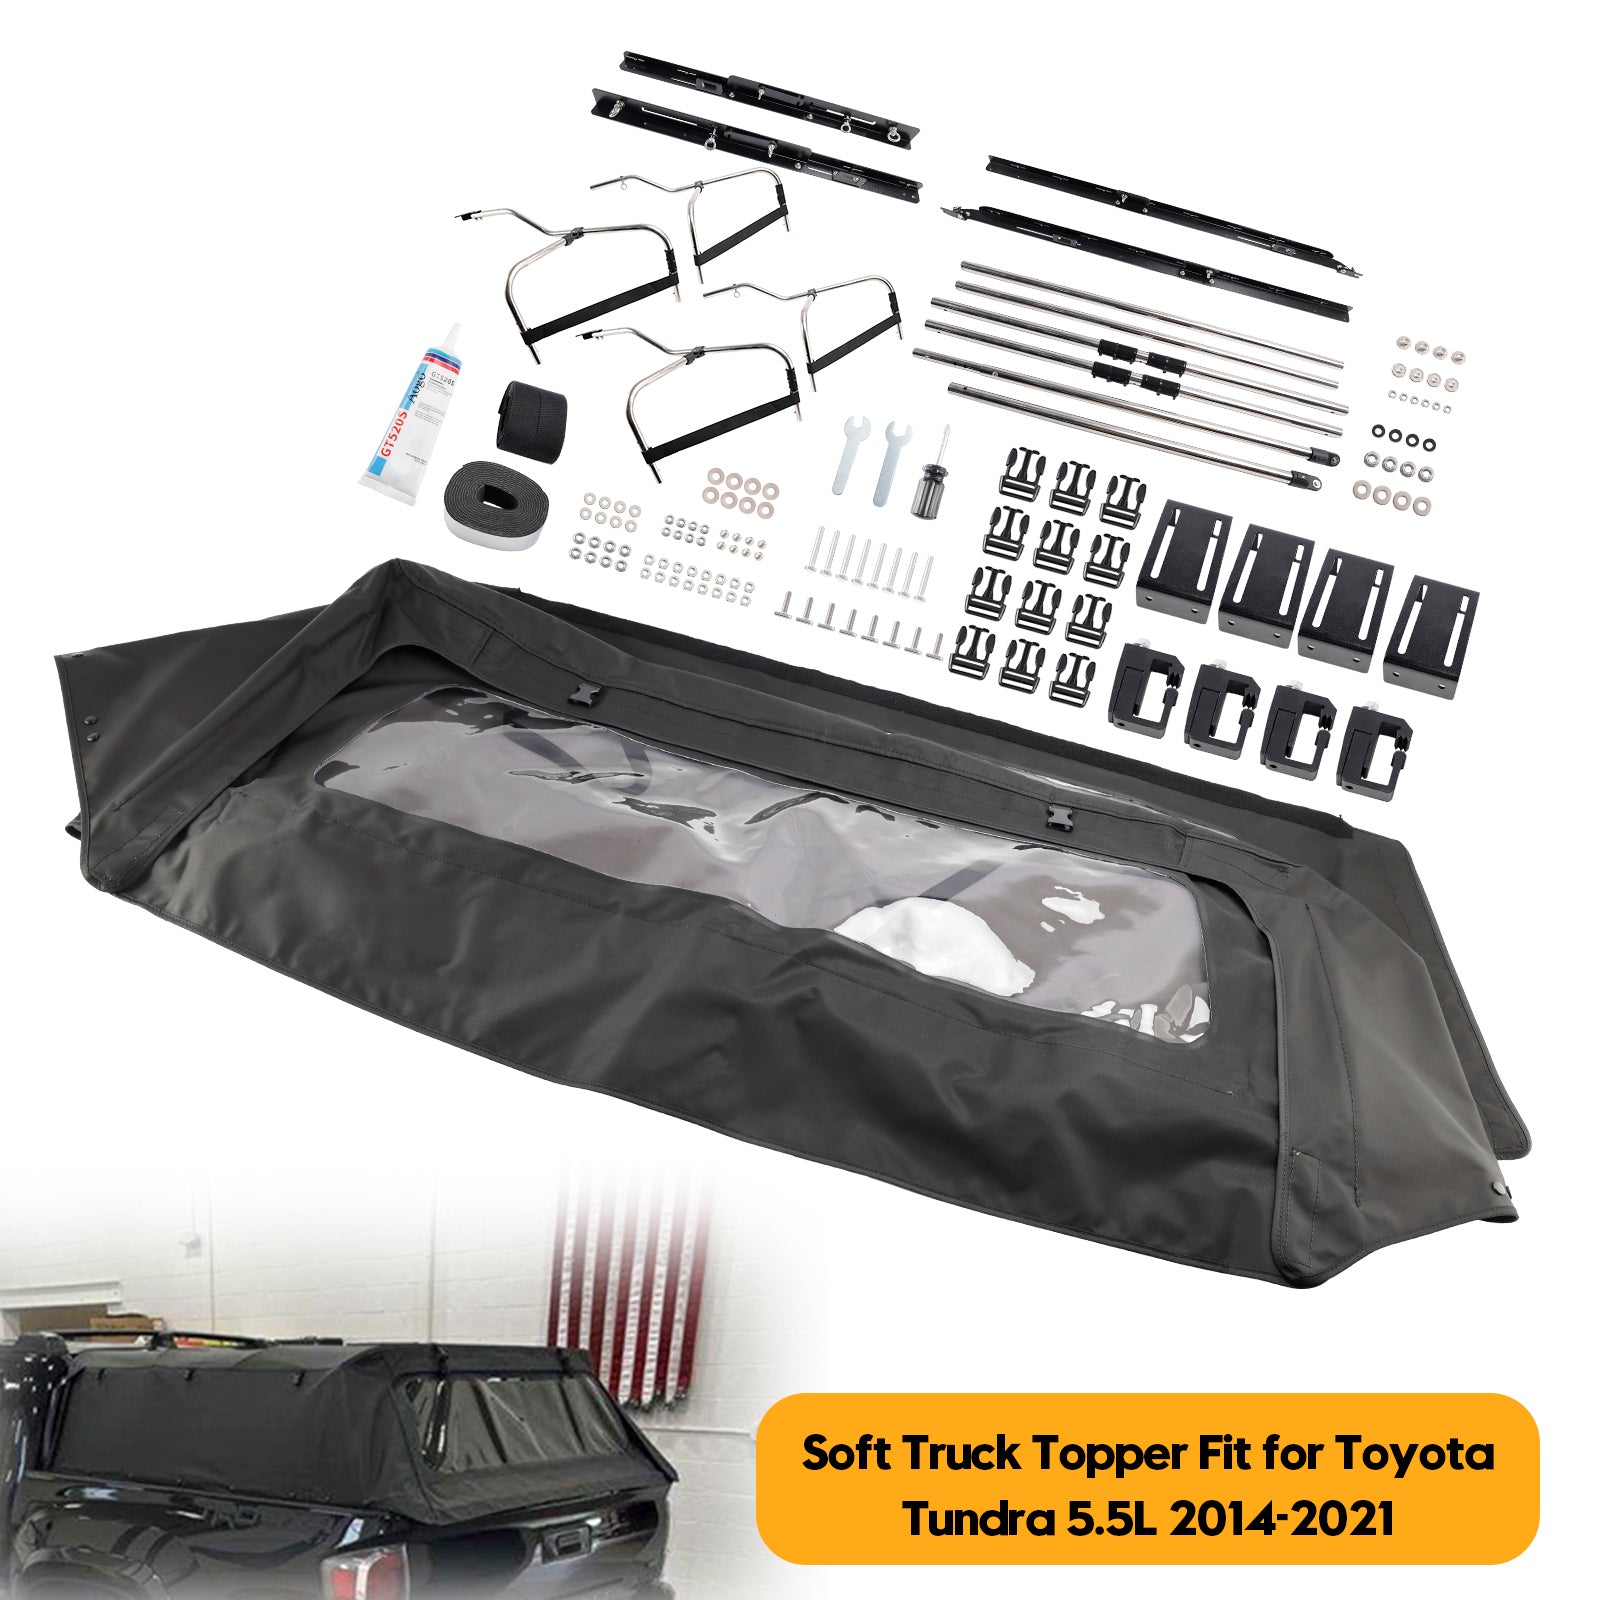 Surmatelas souple pour camion Toyota Tundra 5,5 L 2014-2021